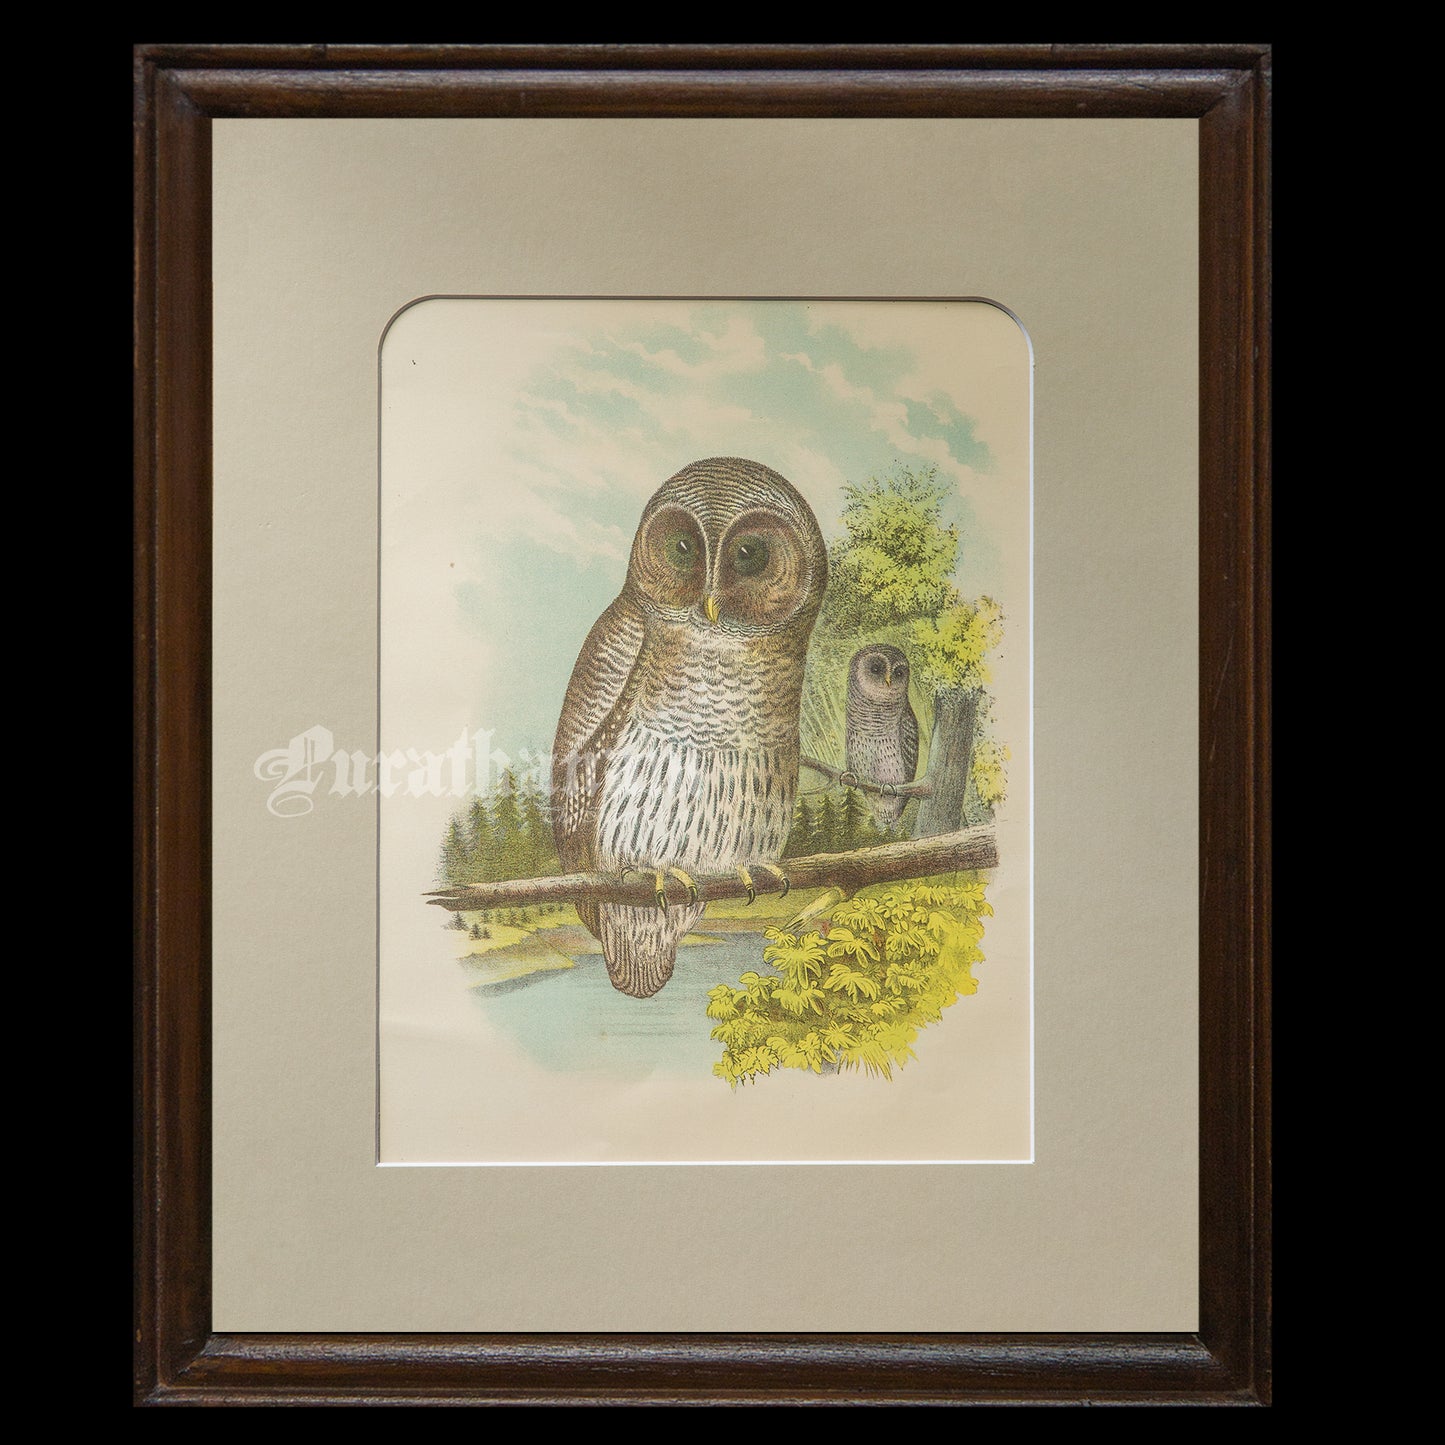 Bird - Barred Owl Chromo lithograph print (Plate - XXII) by Theodore Jasper -  Bird Art / Avian Art